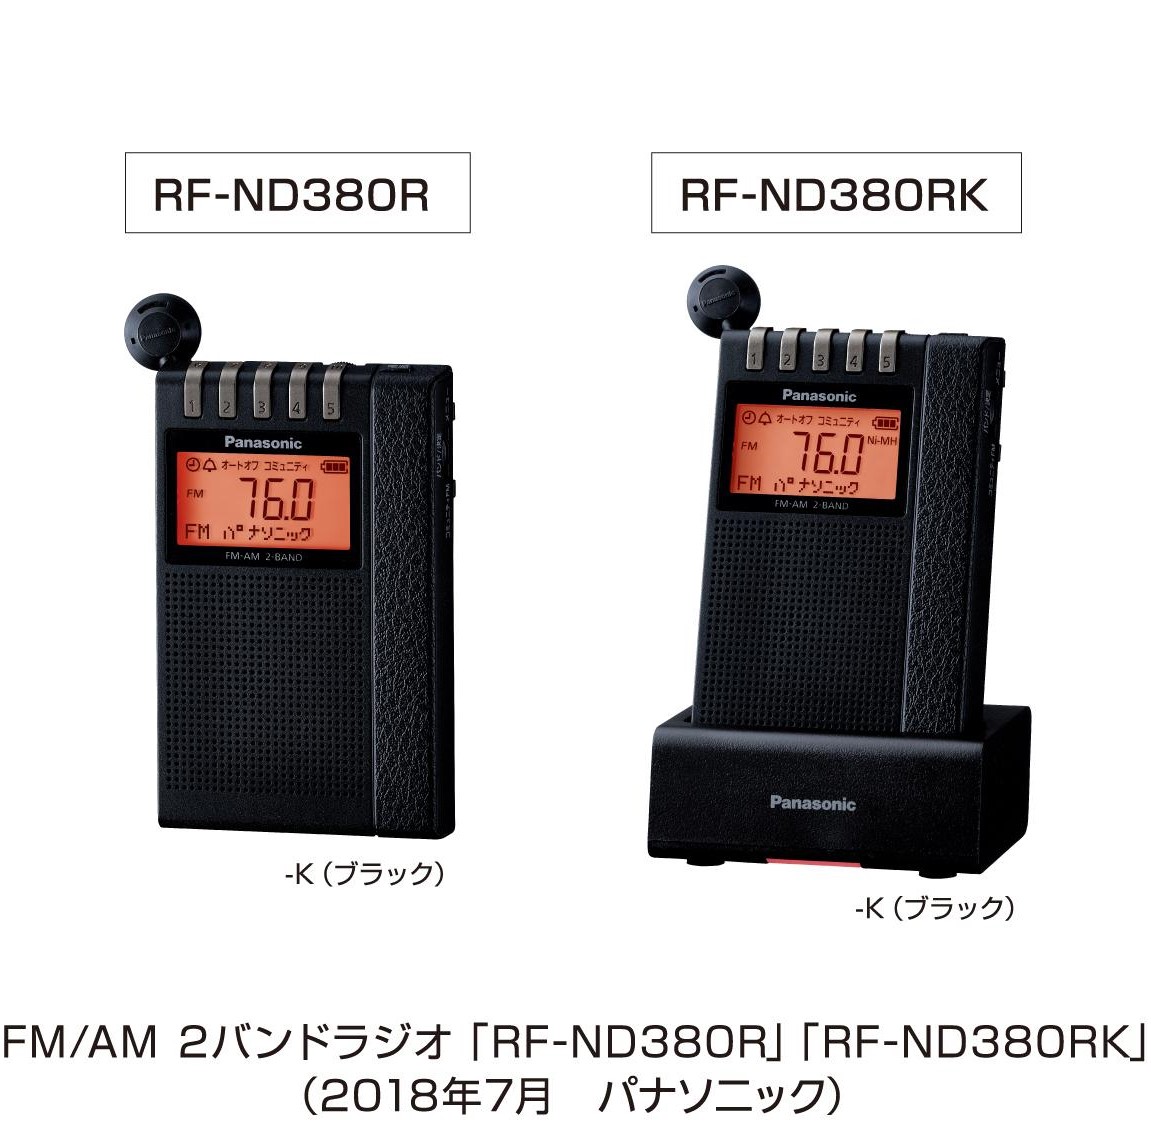 パナソニック 通勤ラジオ FM AM 2バンド ワイドFM対応 アンテナ機能付き充電台付属 ブラック RF-ND380RK-K